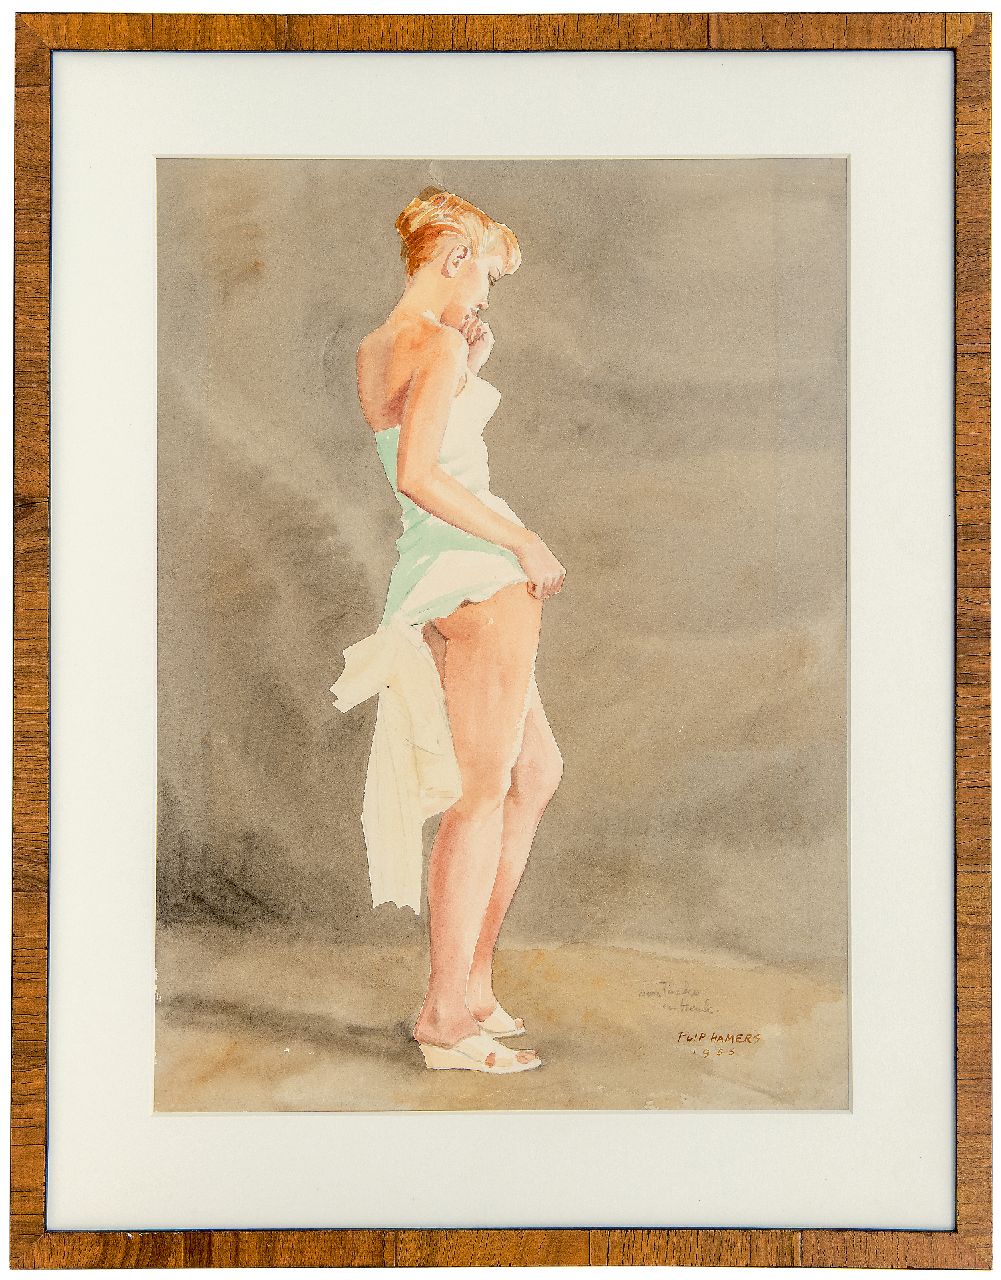 Hamers P.J.  | Philippus Jacob 'Flip' Hamers, Pin-upgirl, potlood en aquarel op papier 51,3 x 38,3 cm, gesigneerd rechtsonder en gedateerd 1956